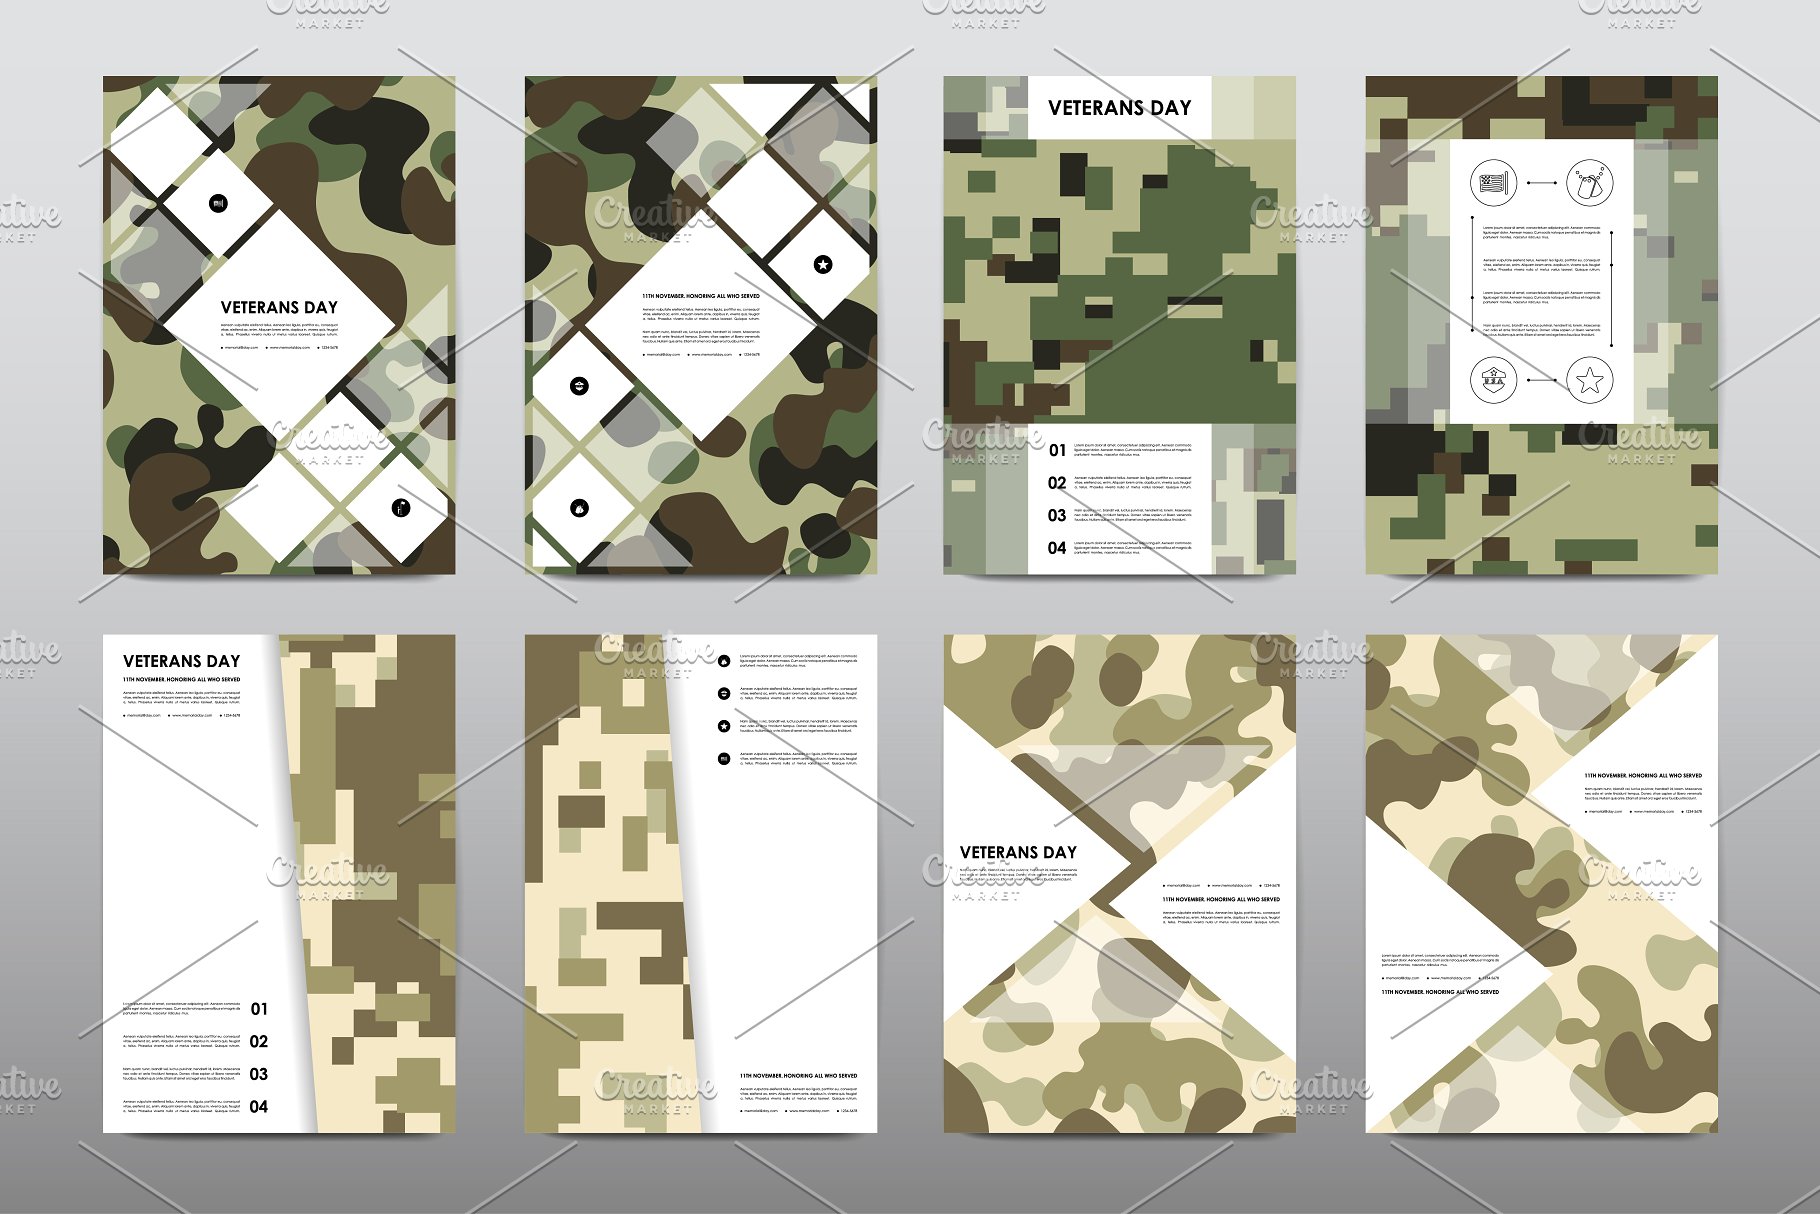 40+老兵节军人宣传小册模板 Veteran’s Day Brochures Bundle插图30